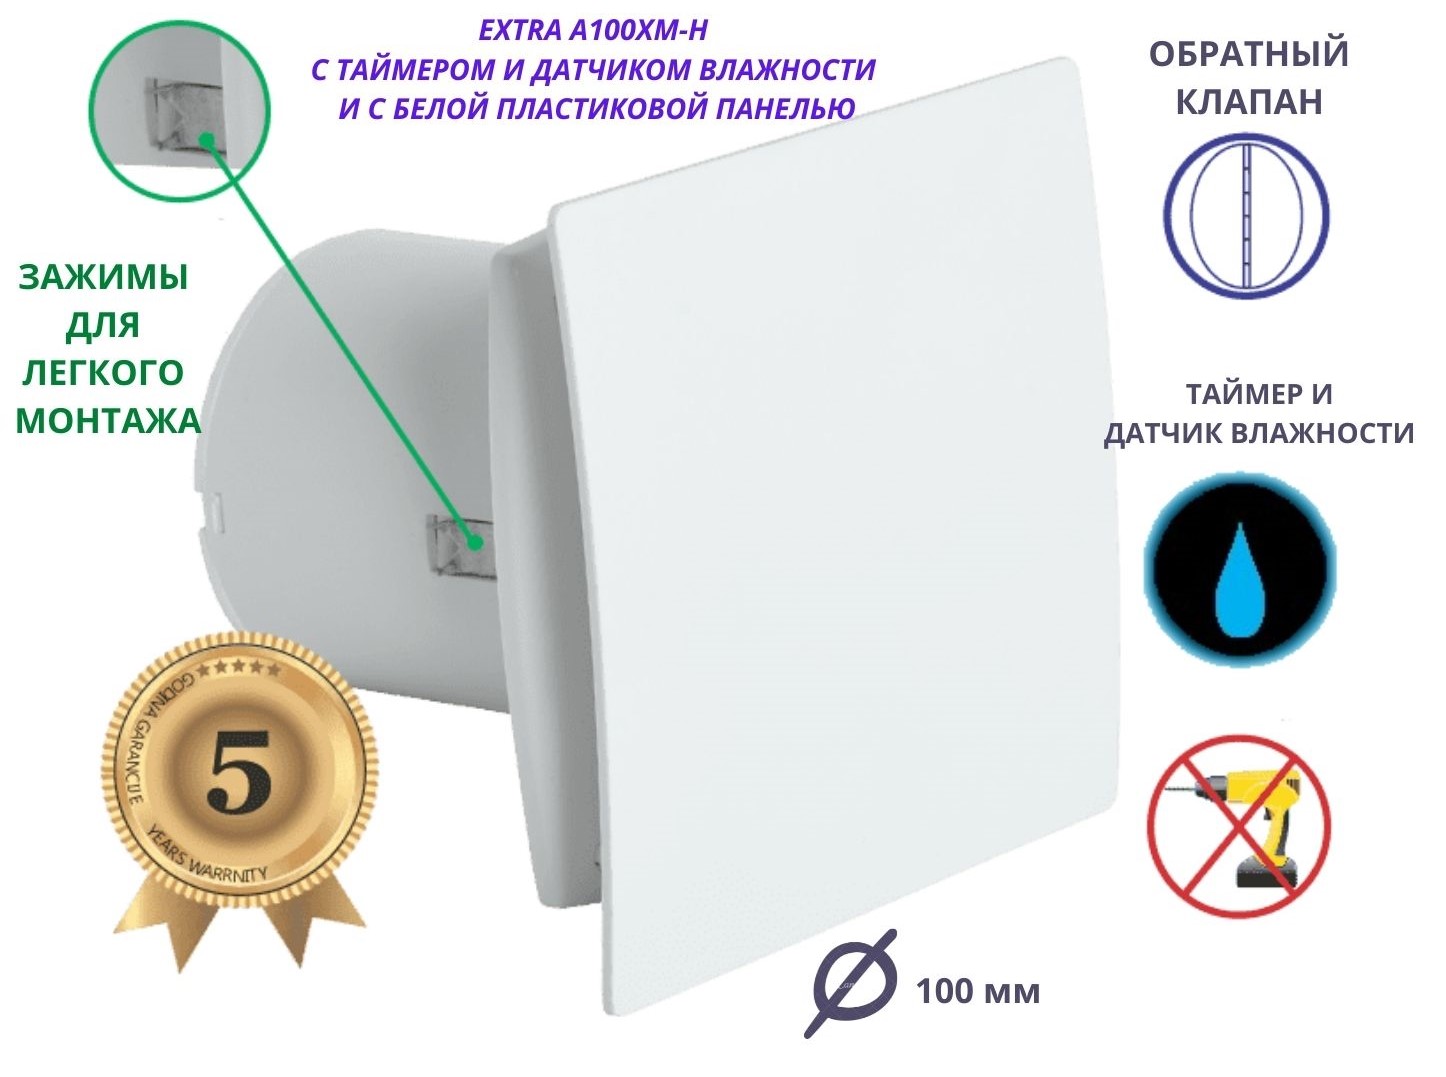 Вентилятор с таймером и датчиком влажности, D 100мм, EXTRA A100XM-H, белый, Сербия